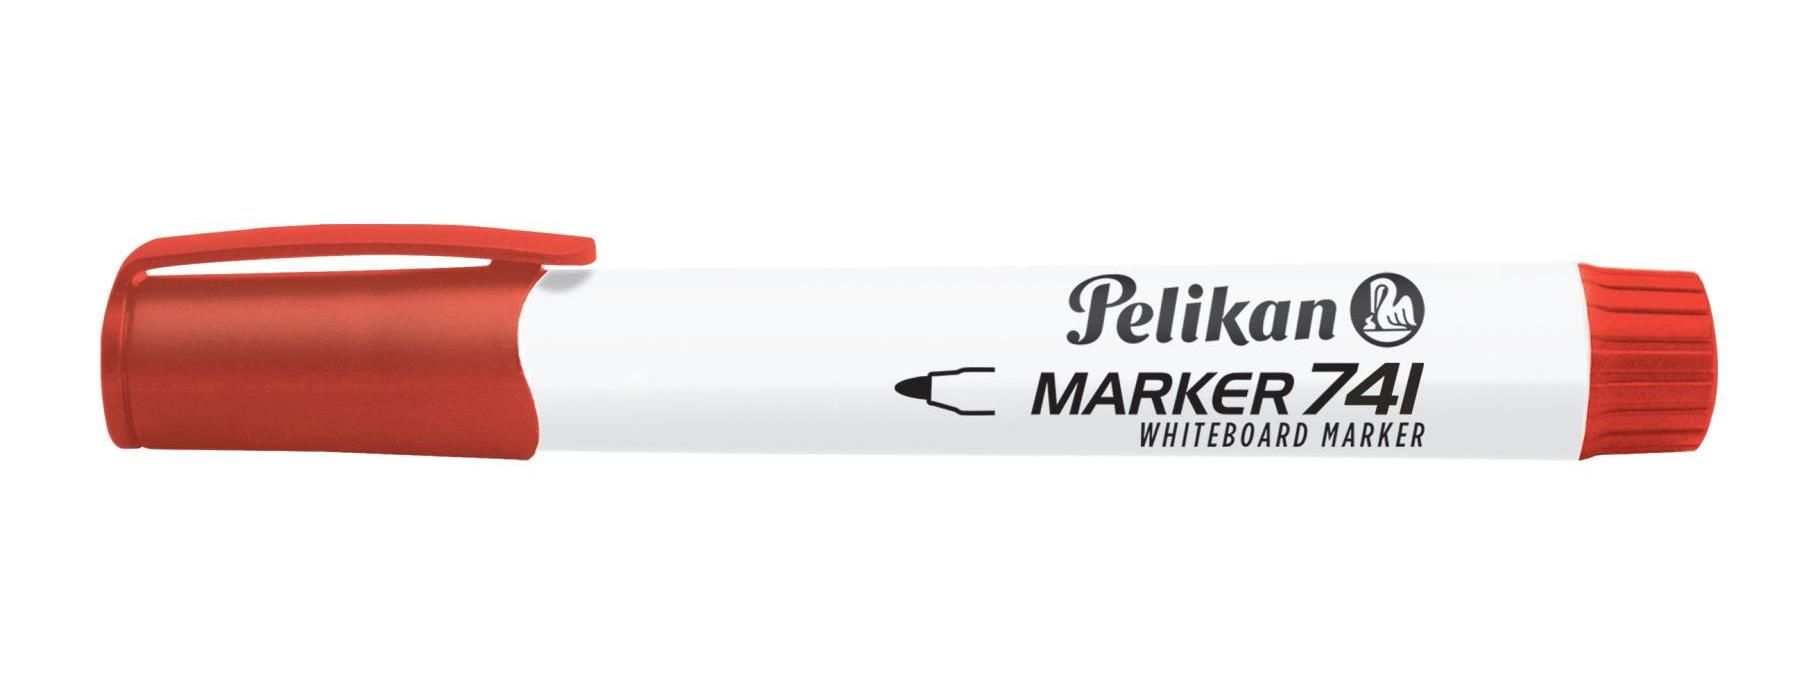 Pelikan Confezione 10 Whiteboard